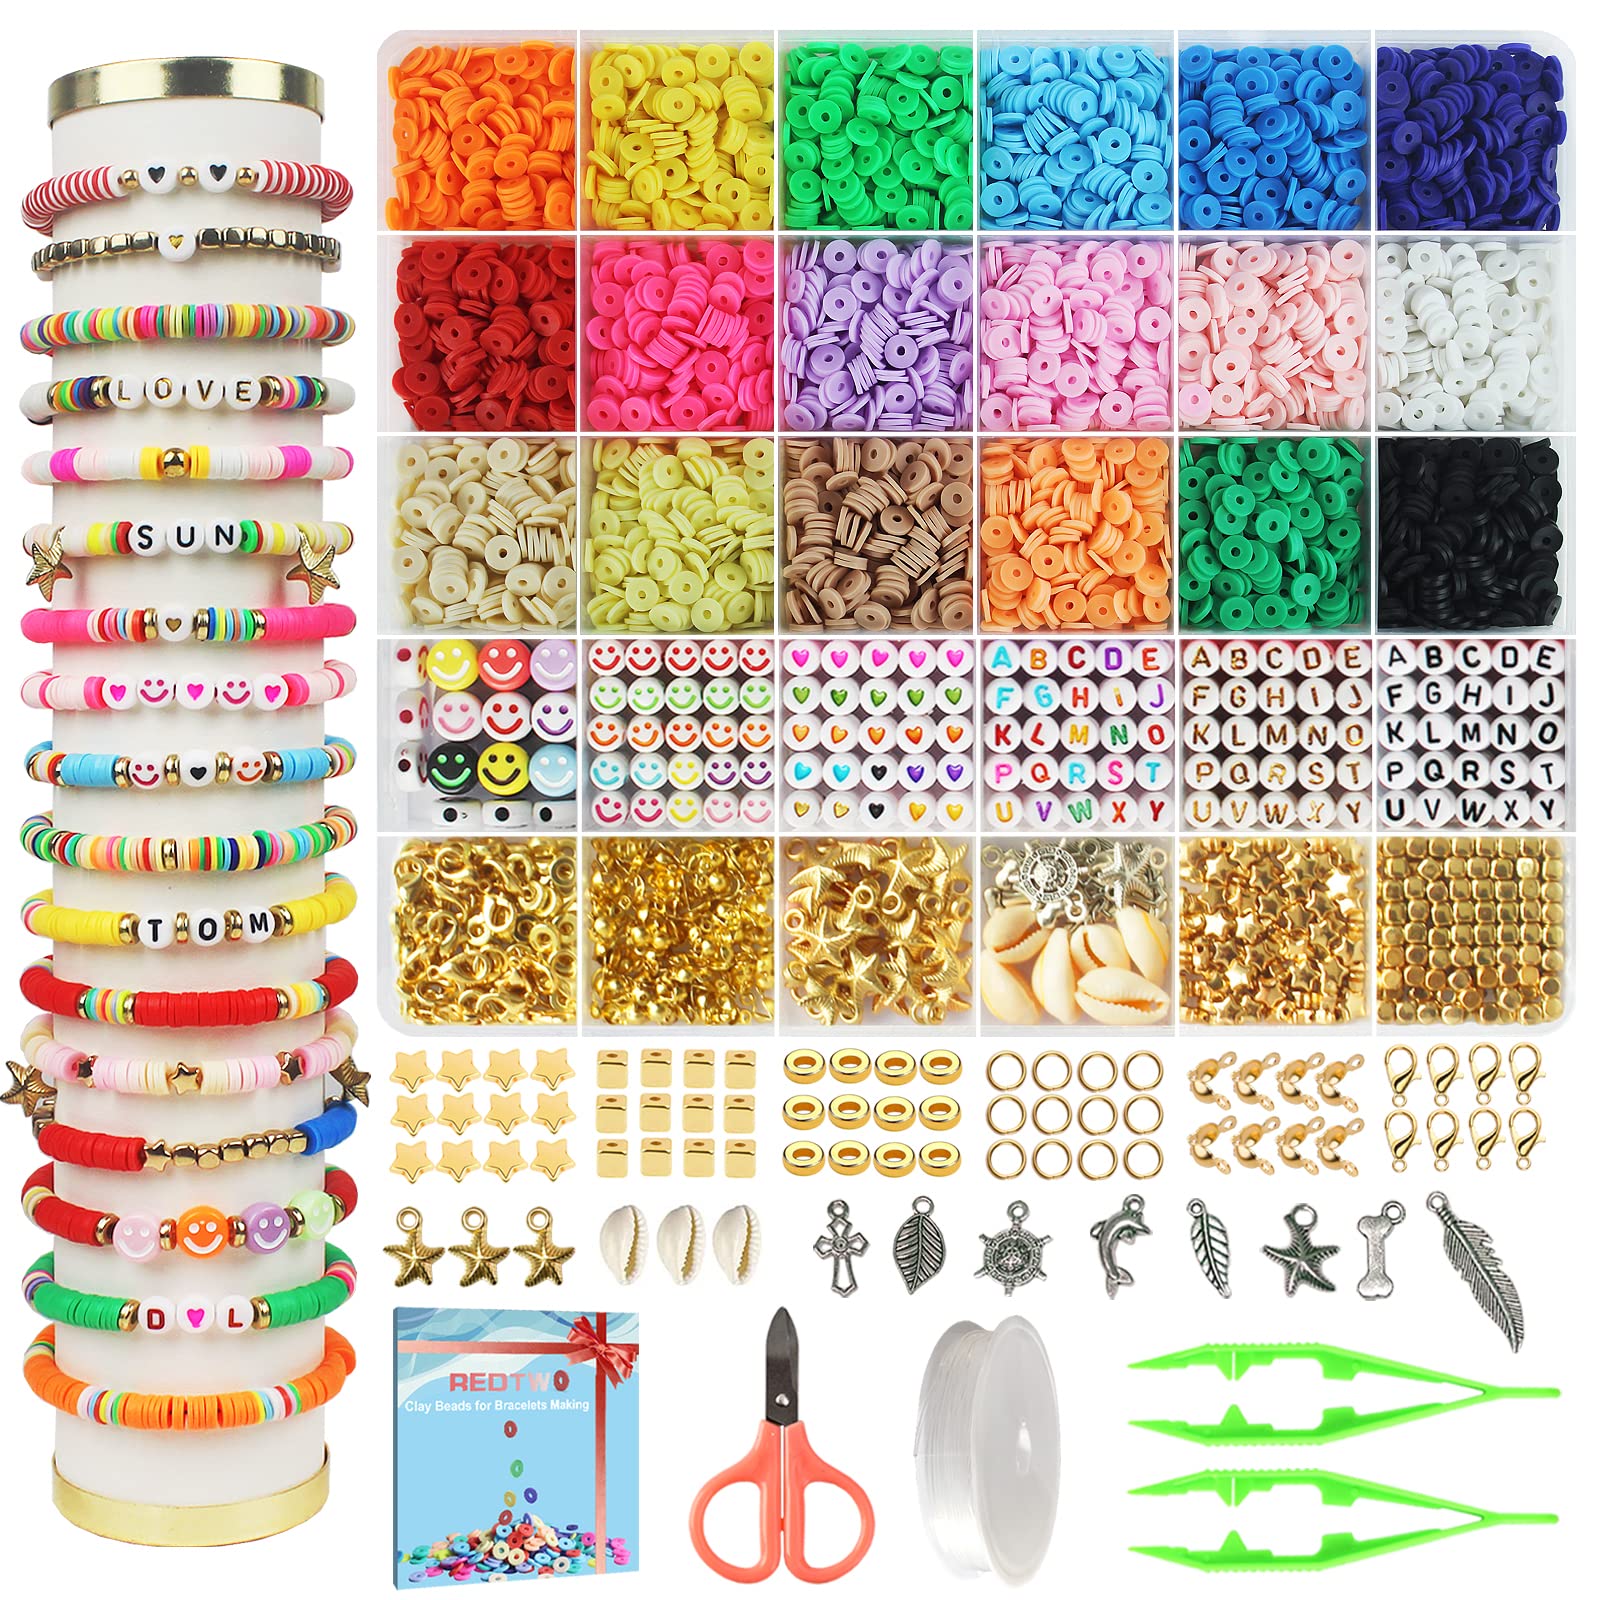  Gushu 5000 Pcs Red Clay Beads Bracelet Making Kit